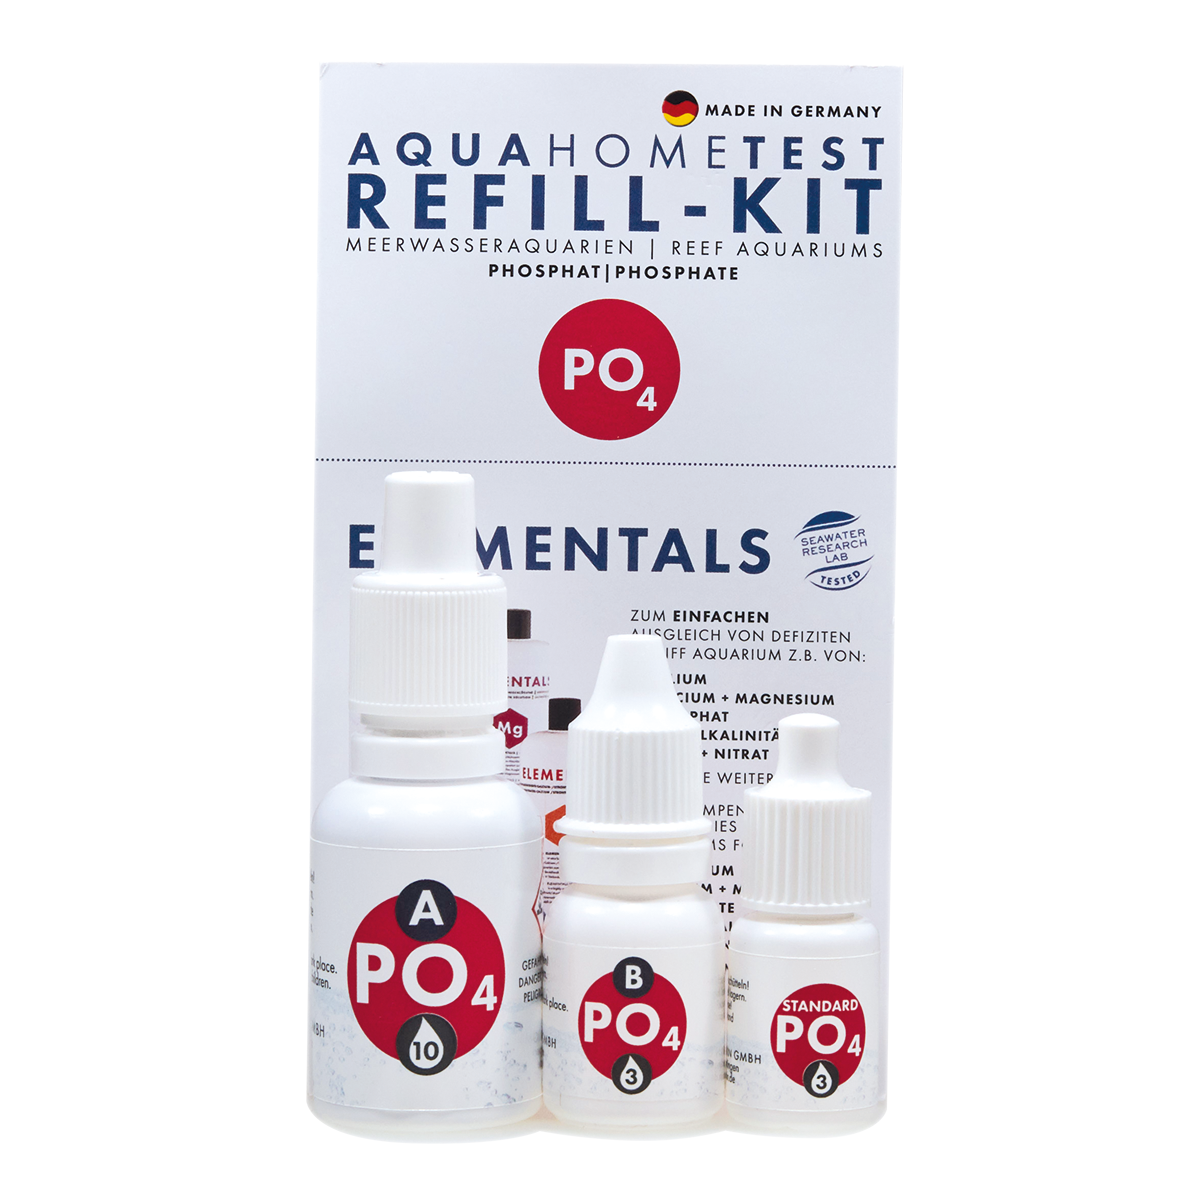 Fauna Marin Aquahometest PO4 Phosphate Test Kit Refill